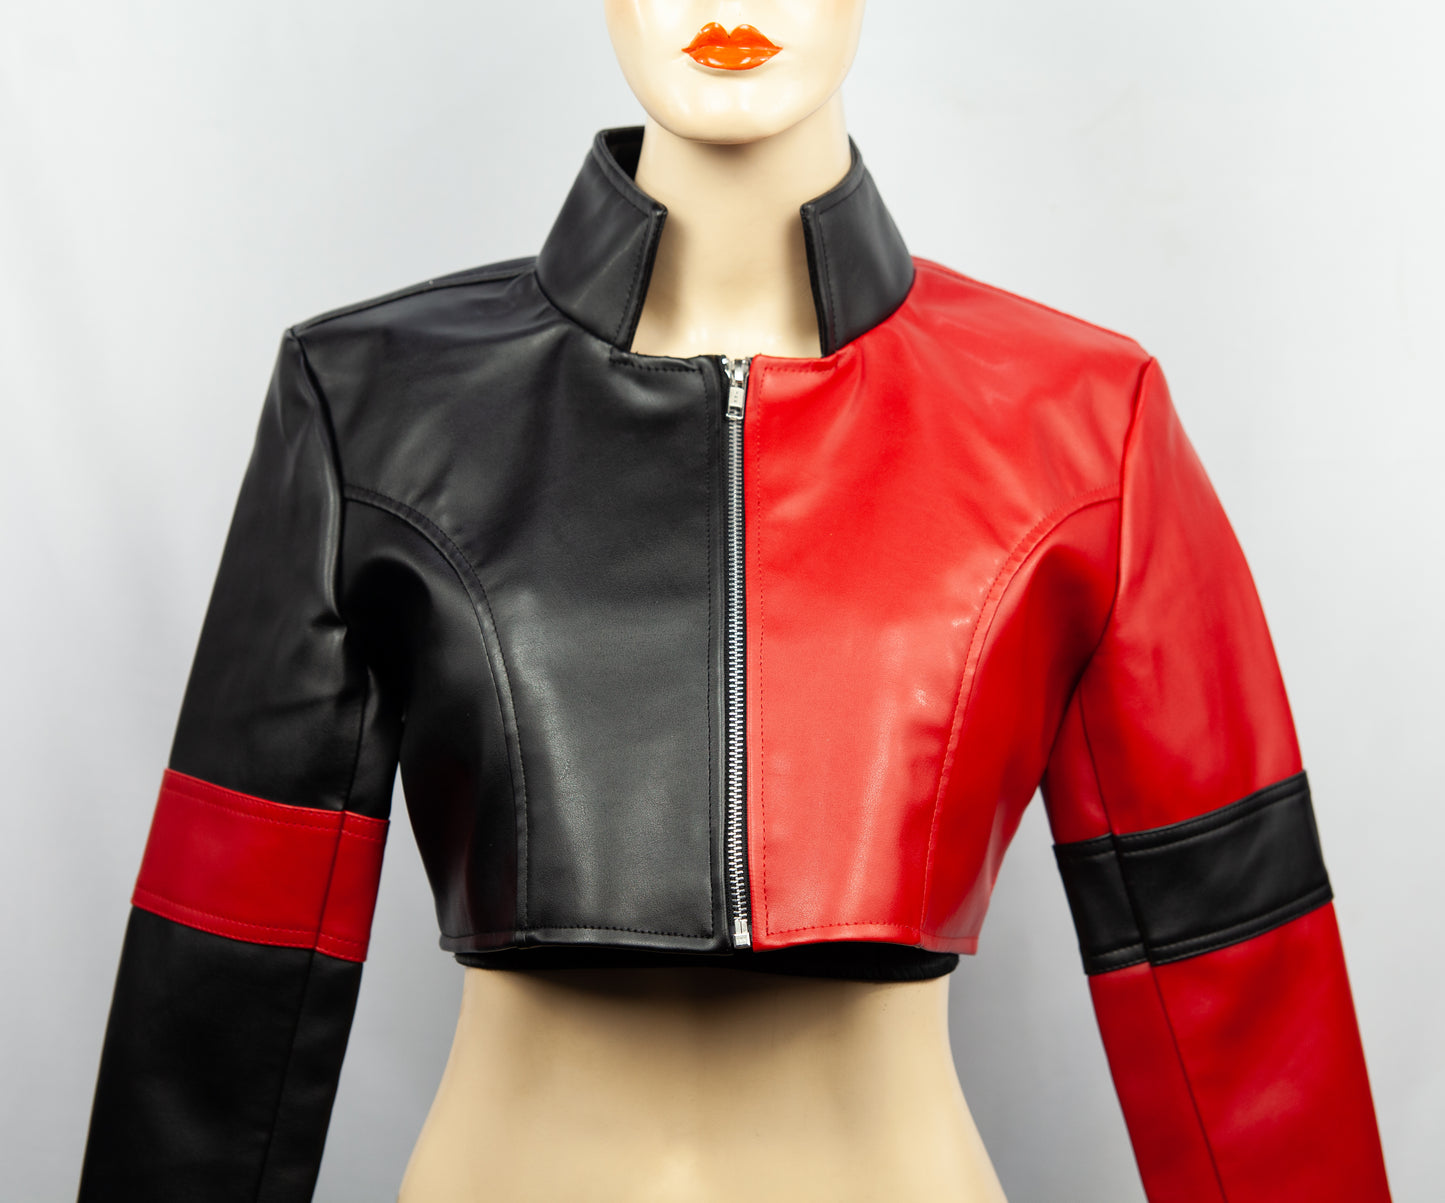 Harlequin Style Leather Jacket